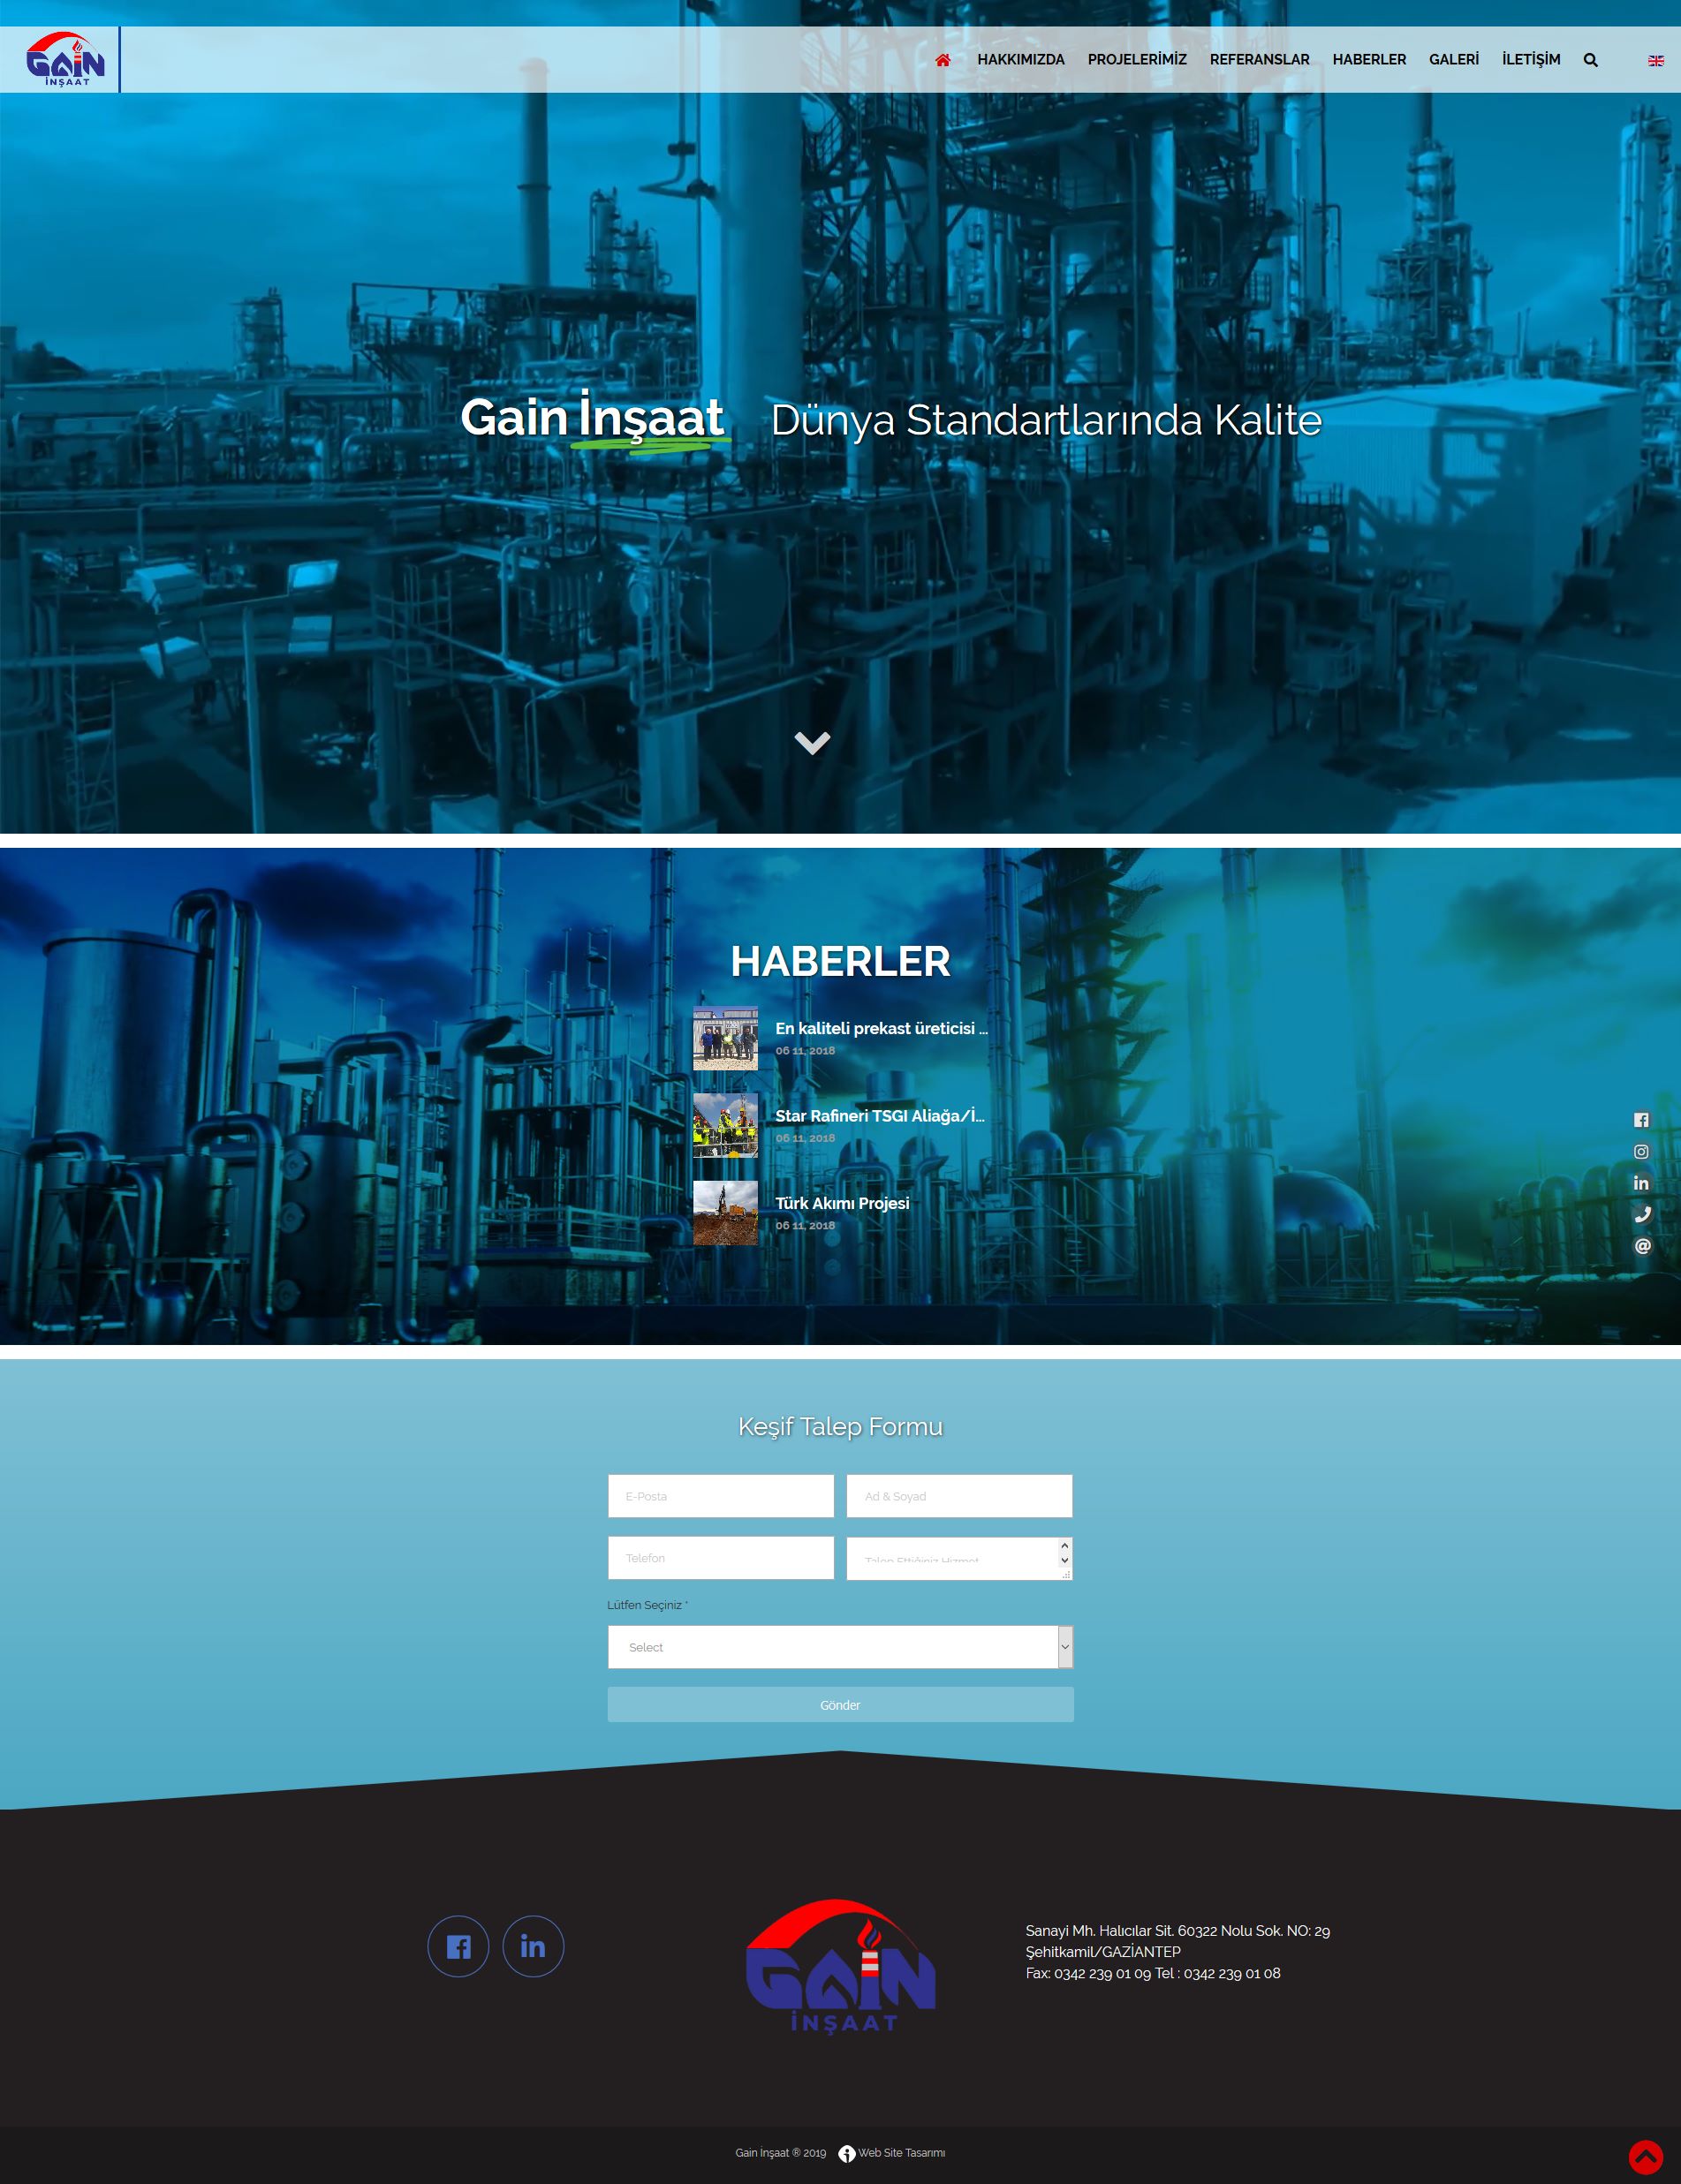 Gain İnşaat web sitesi ana sayfa tasarımı